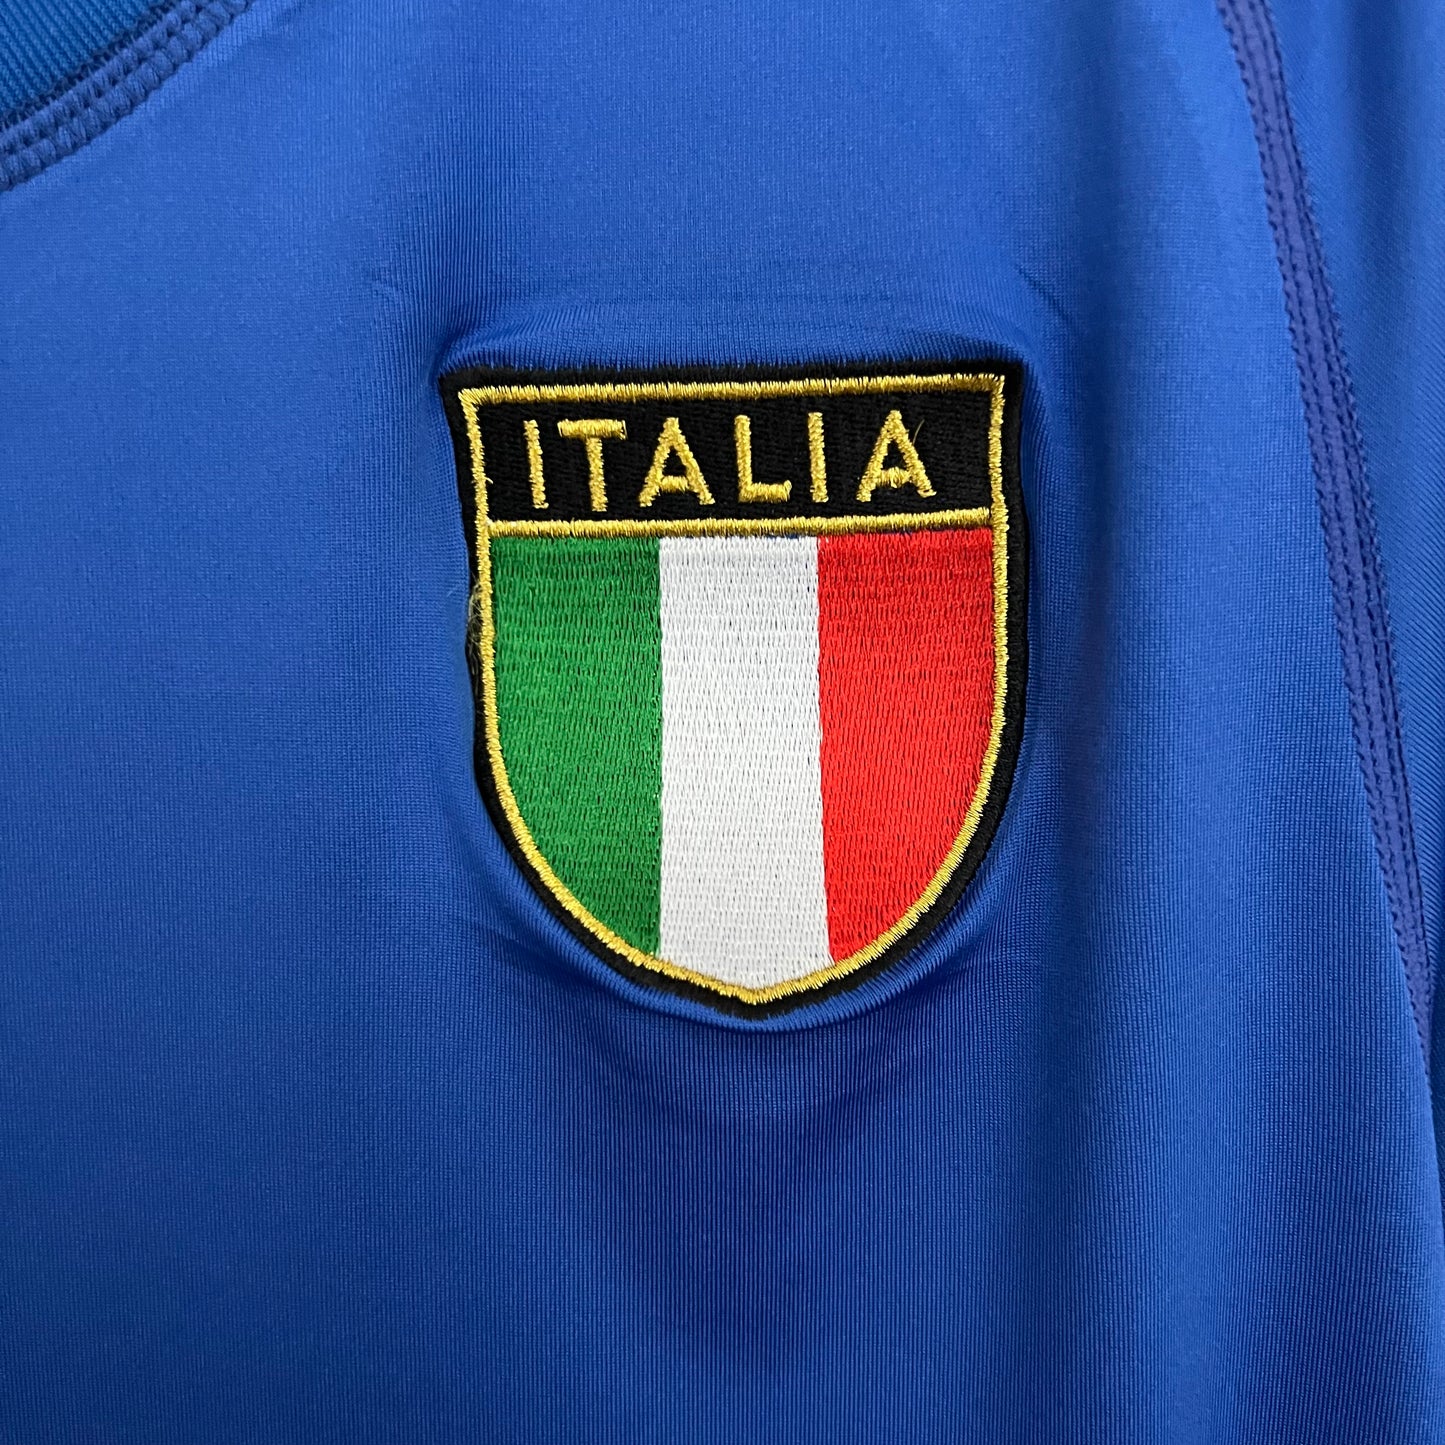 Camisa Retrô Itália Home 2000